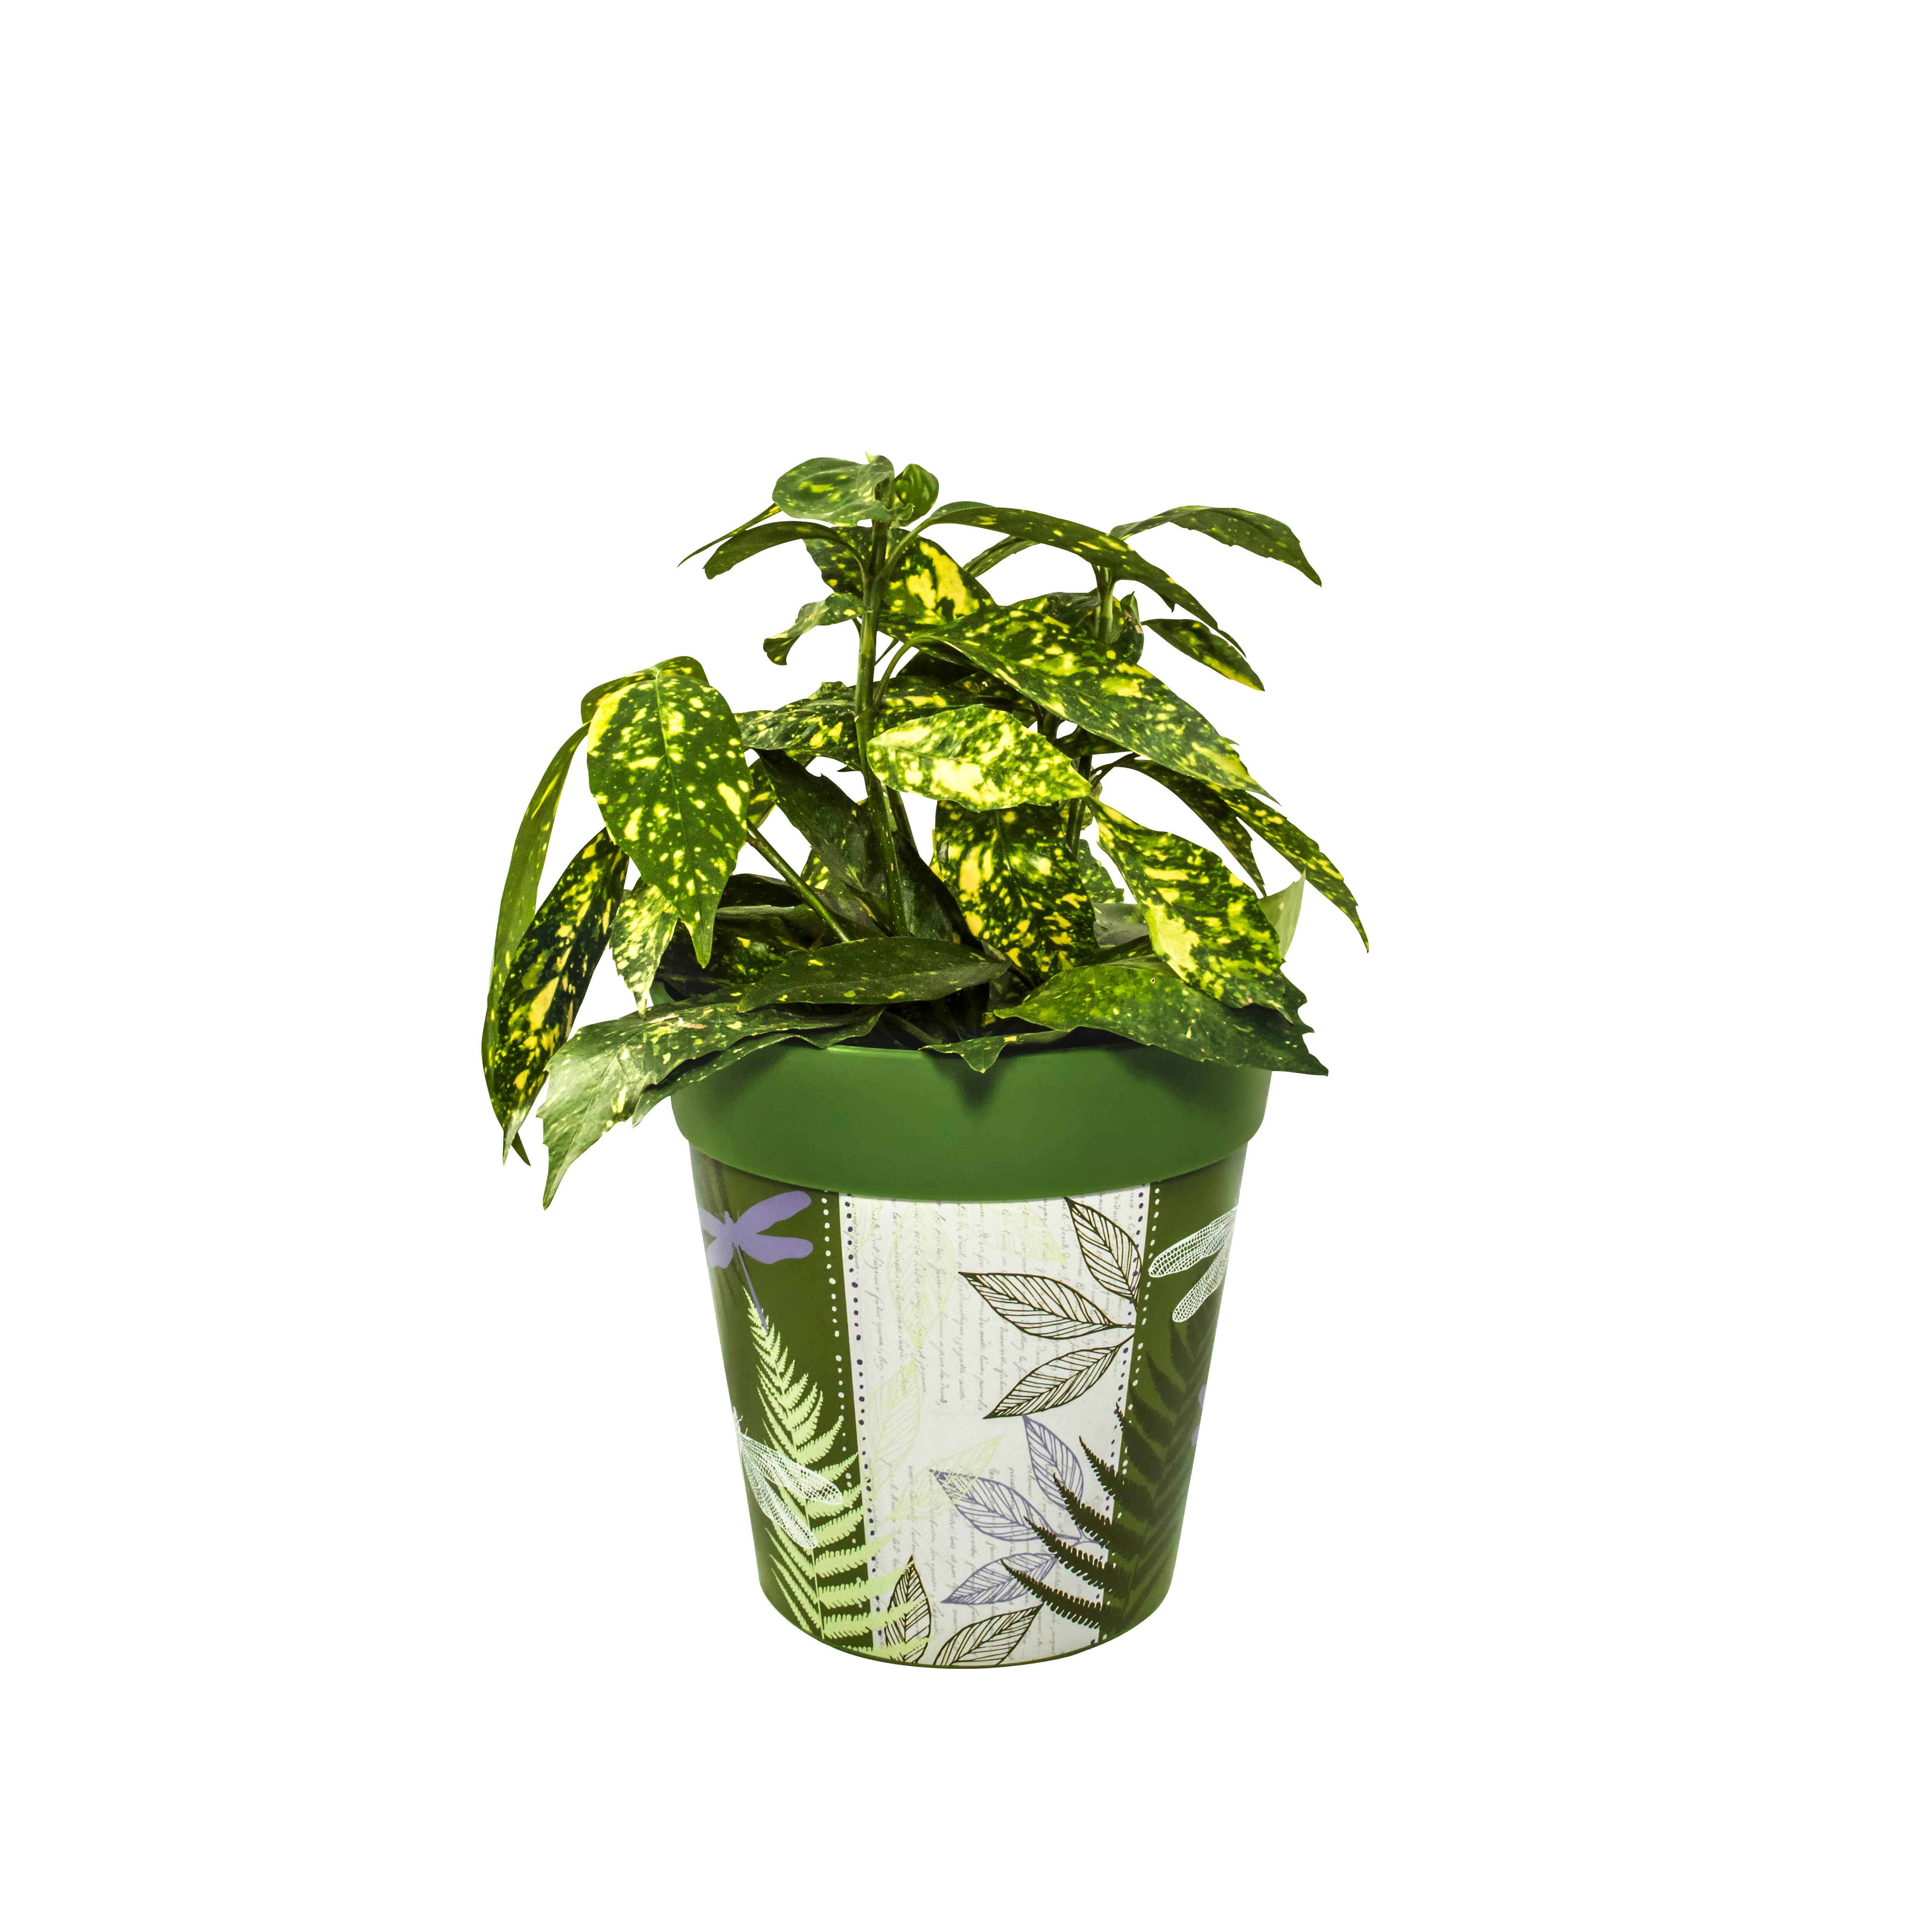 Picture of Planted Medium 22cm Green Dragonflies Pattern Plastic Indoor/Outdoor Flowerpot 